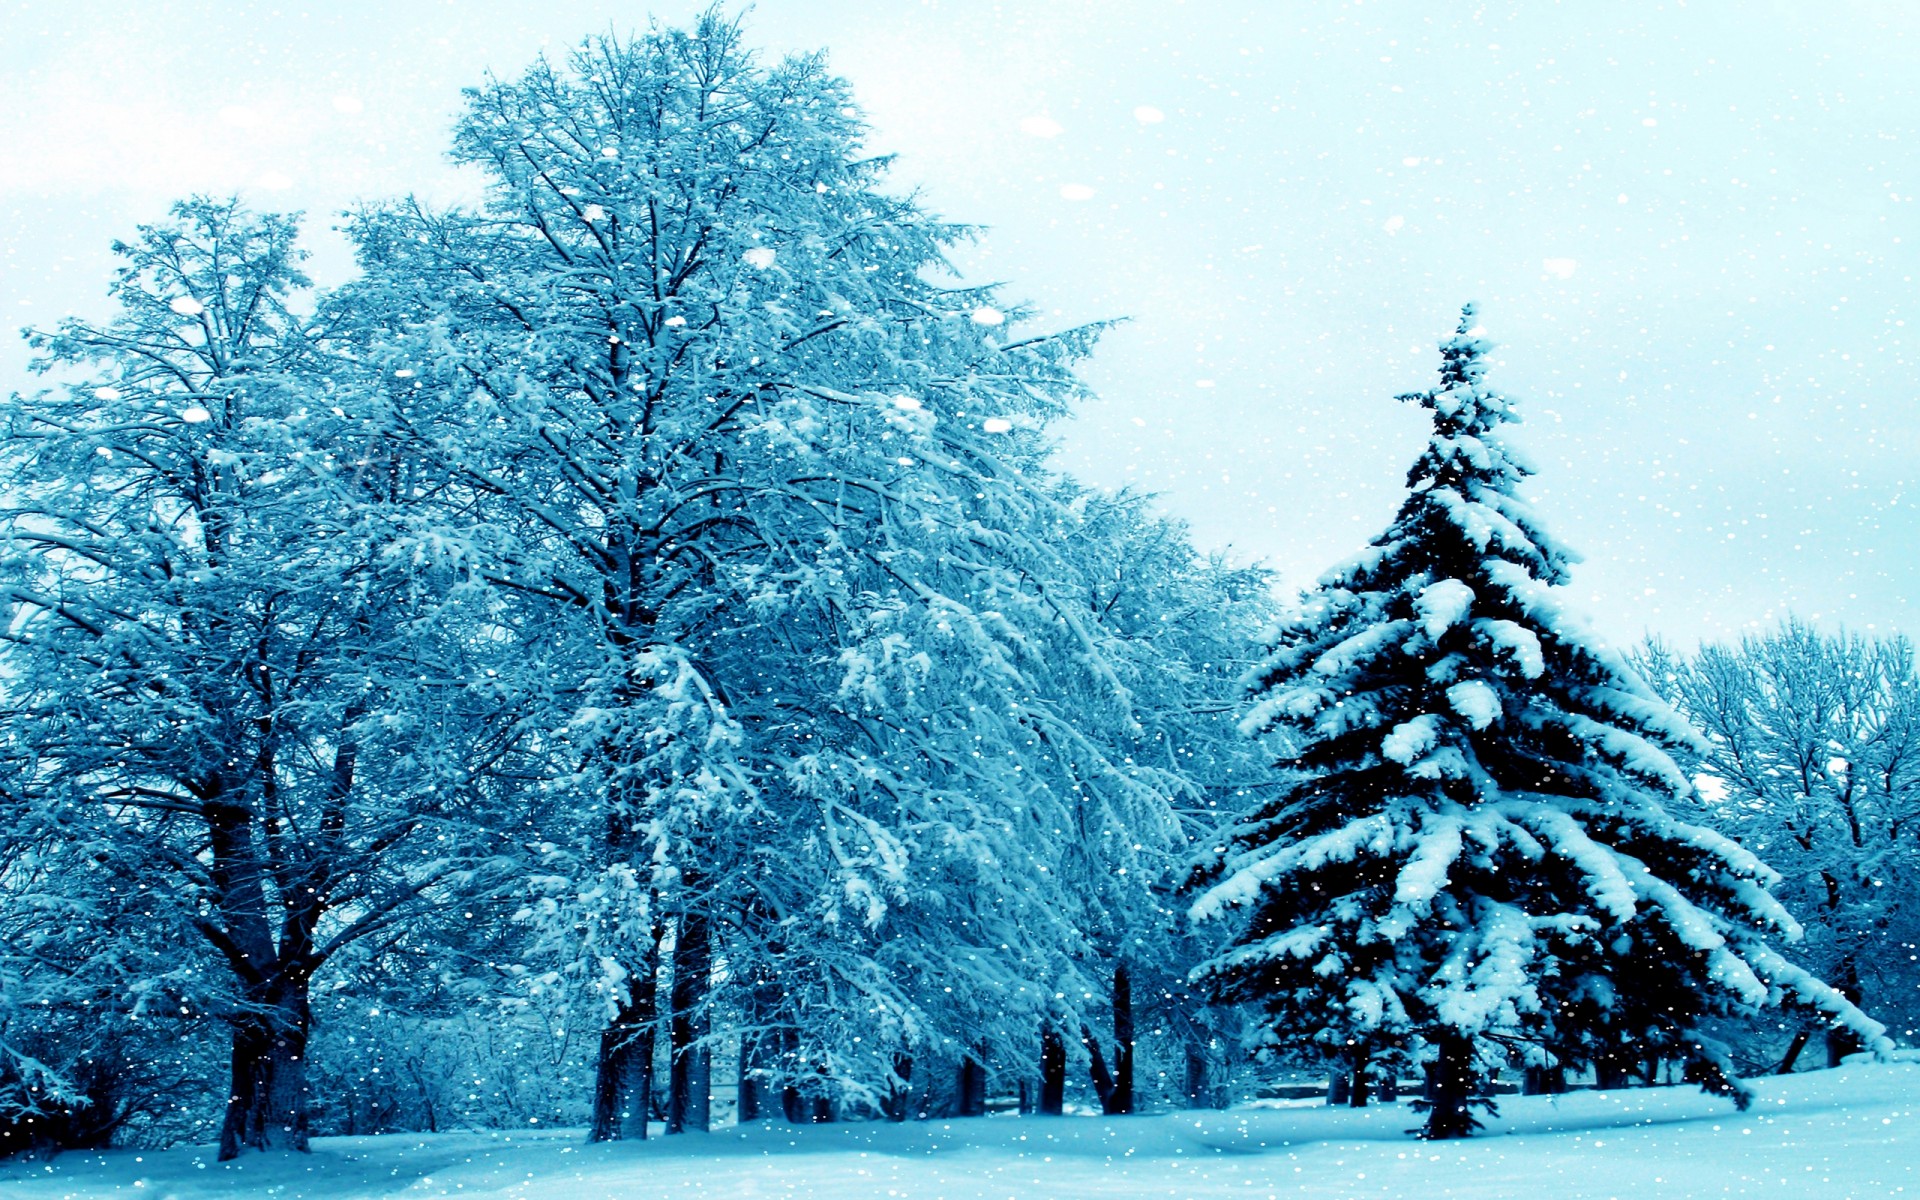 Скачать обои бесплатно Зима, Снег, Лес, Дерево, Снегопад, Земля/природа картинка на рабочий стол ПК